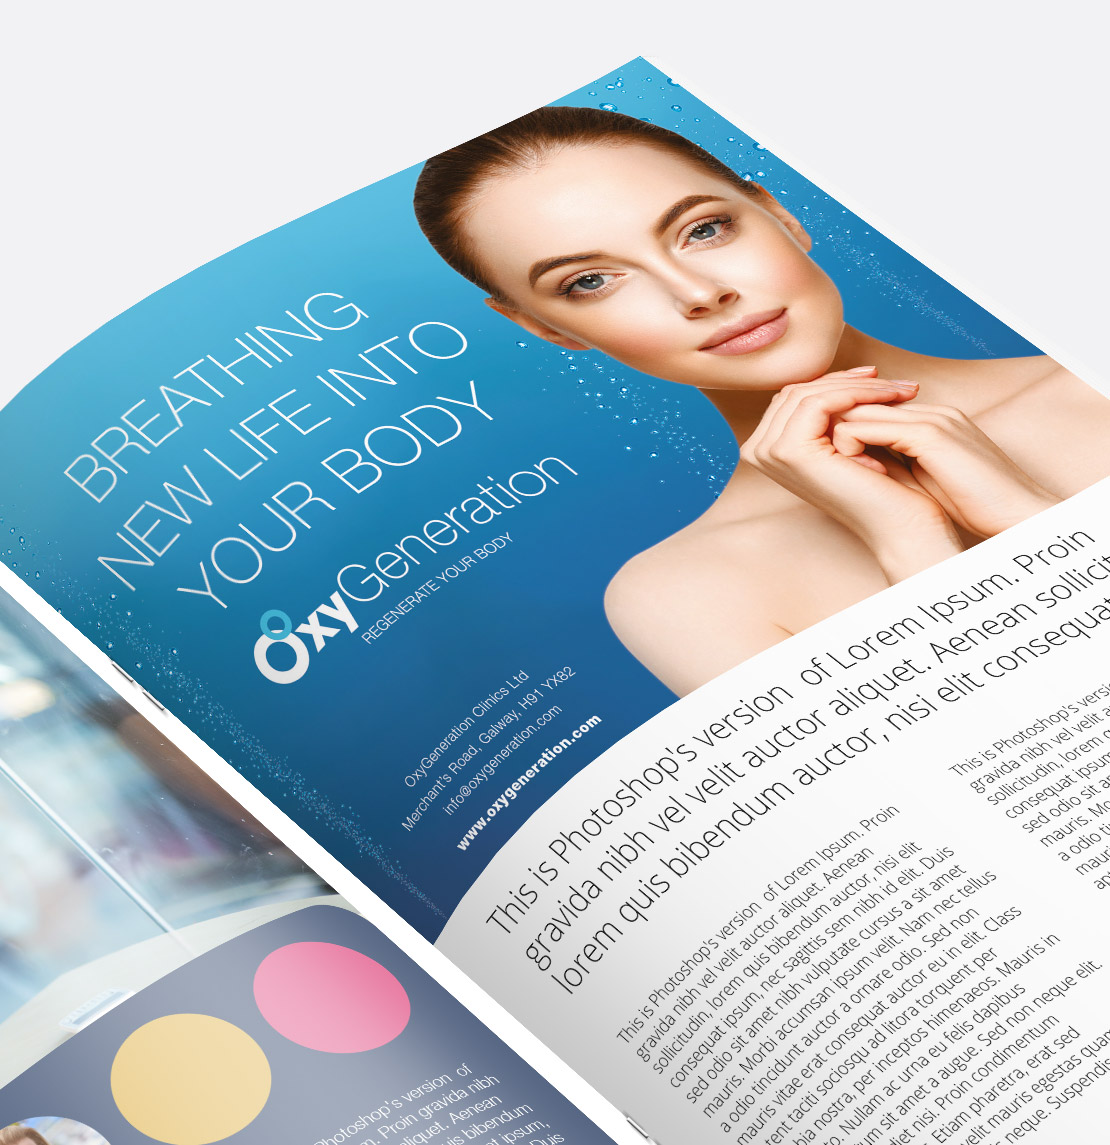 OxyGeneration Magazine Ad